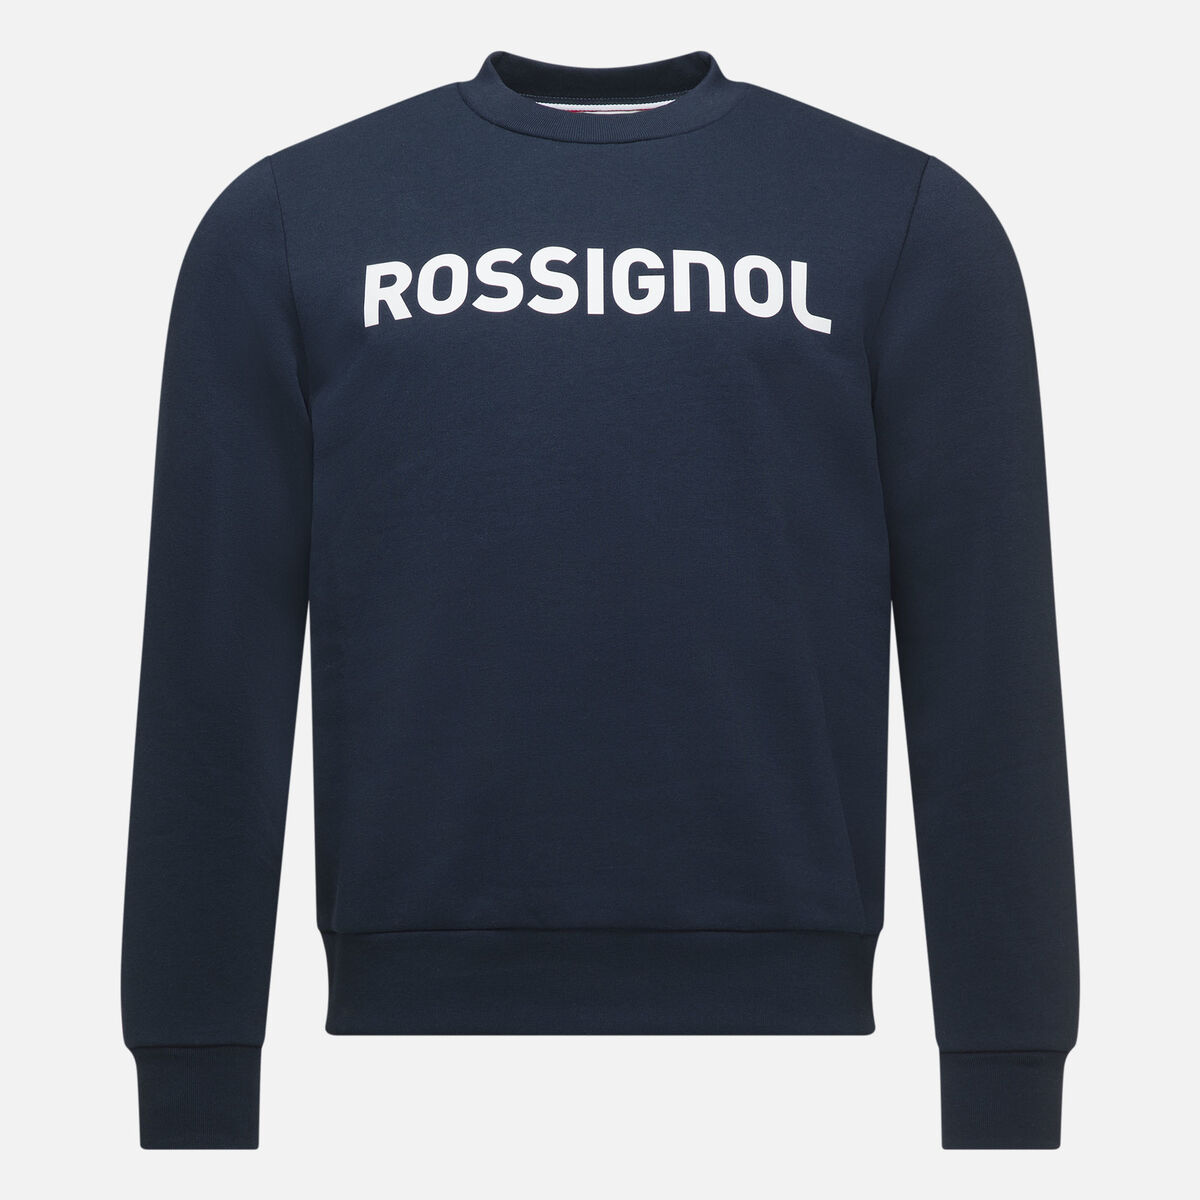 Rossignol Men's logo cotton sweatshirt round neck blue